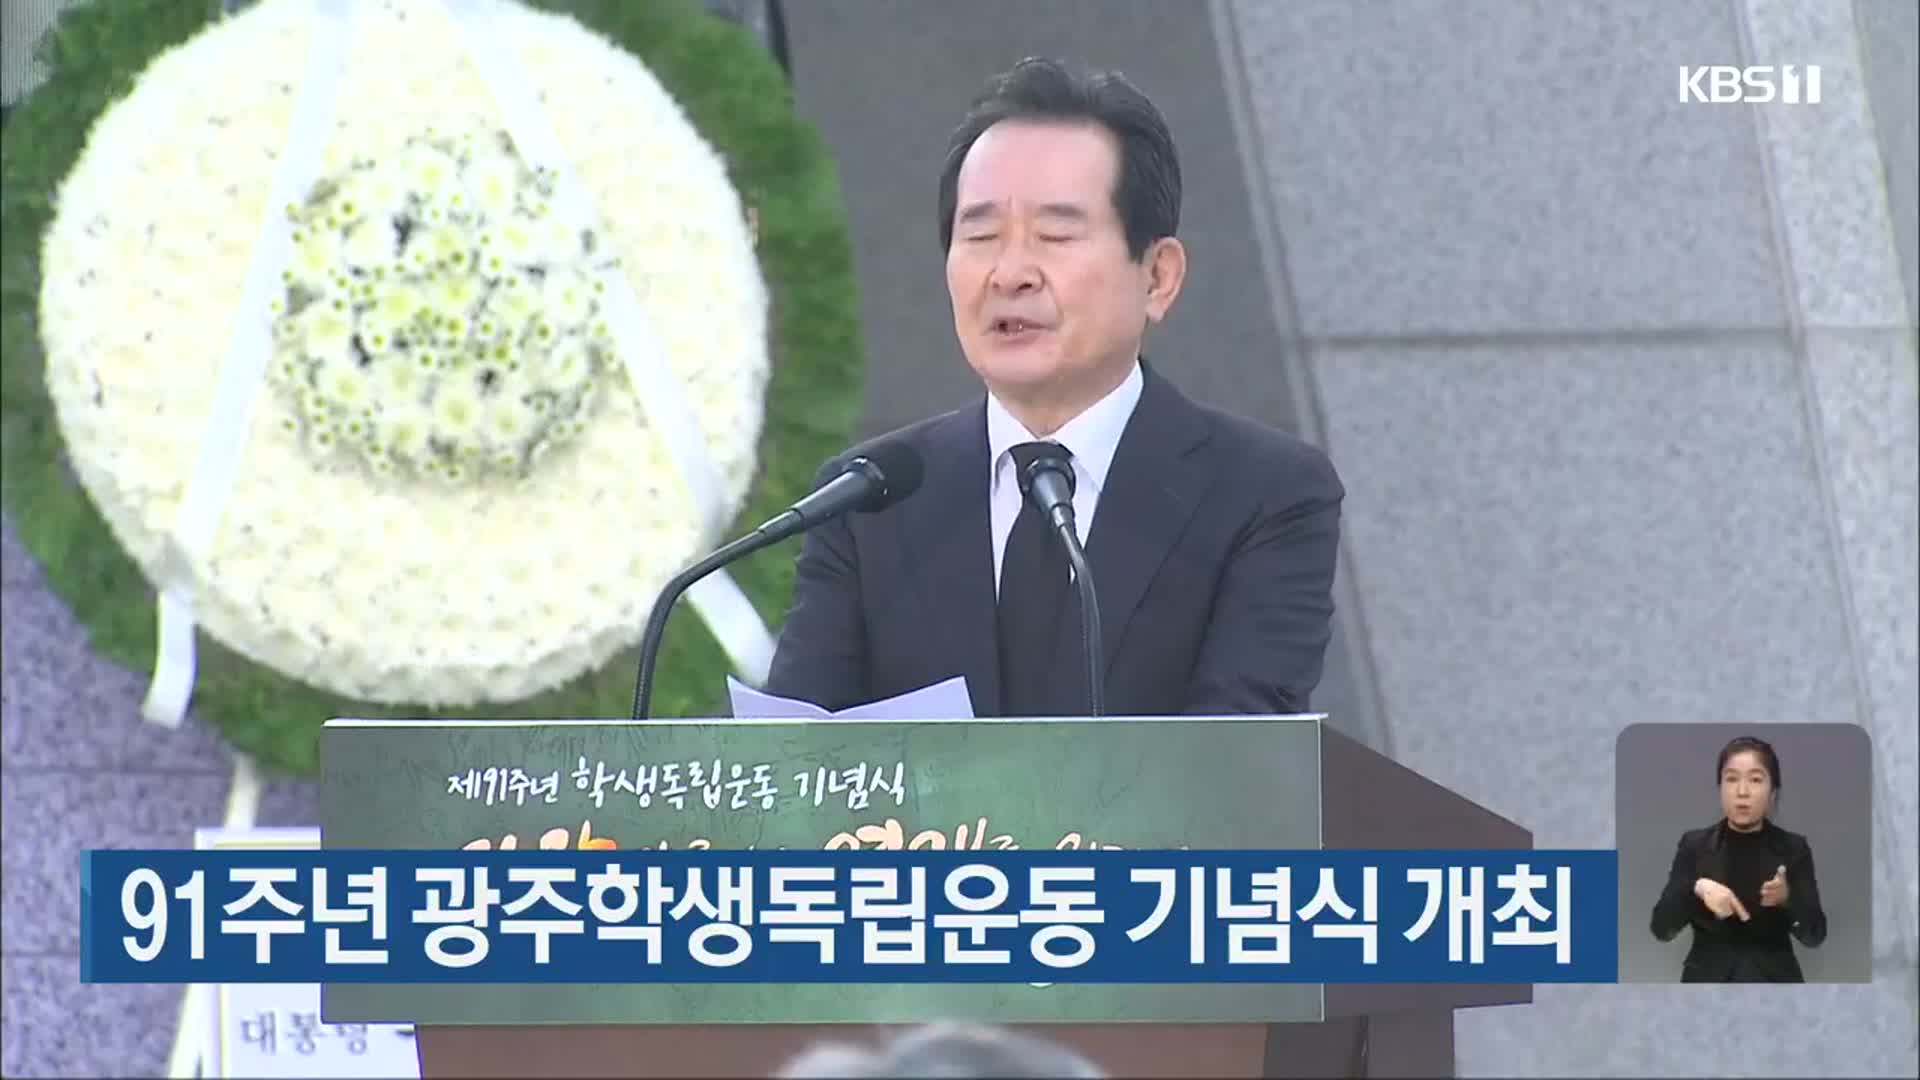 91주년 광주학생독립운동 기념식 개최